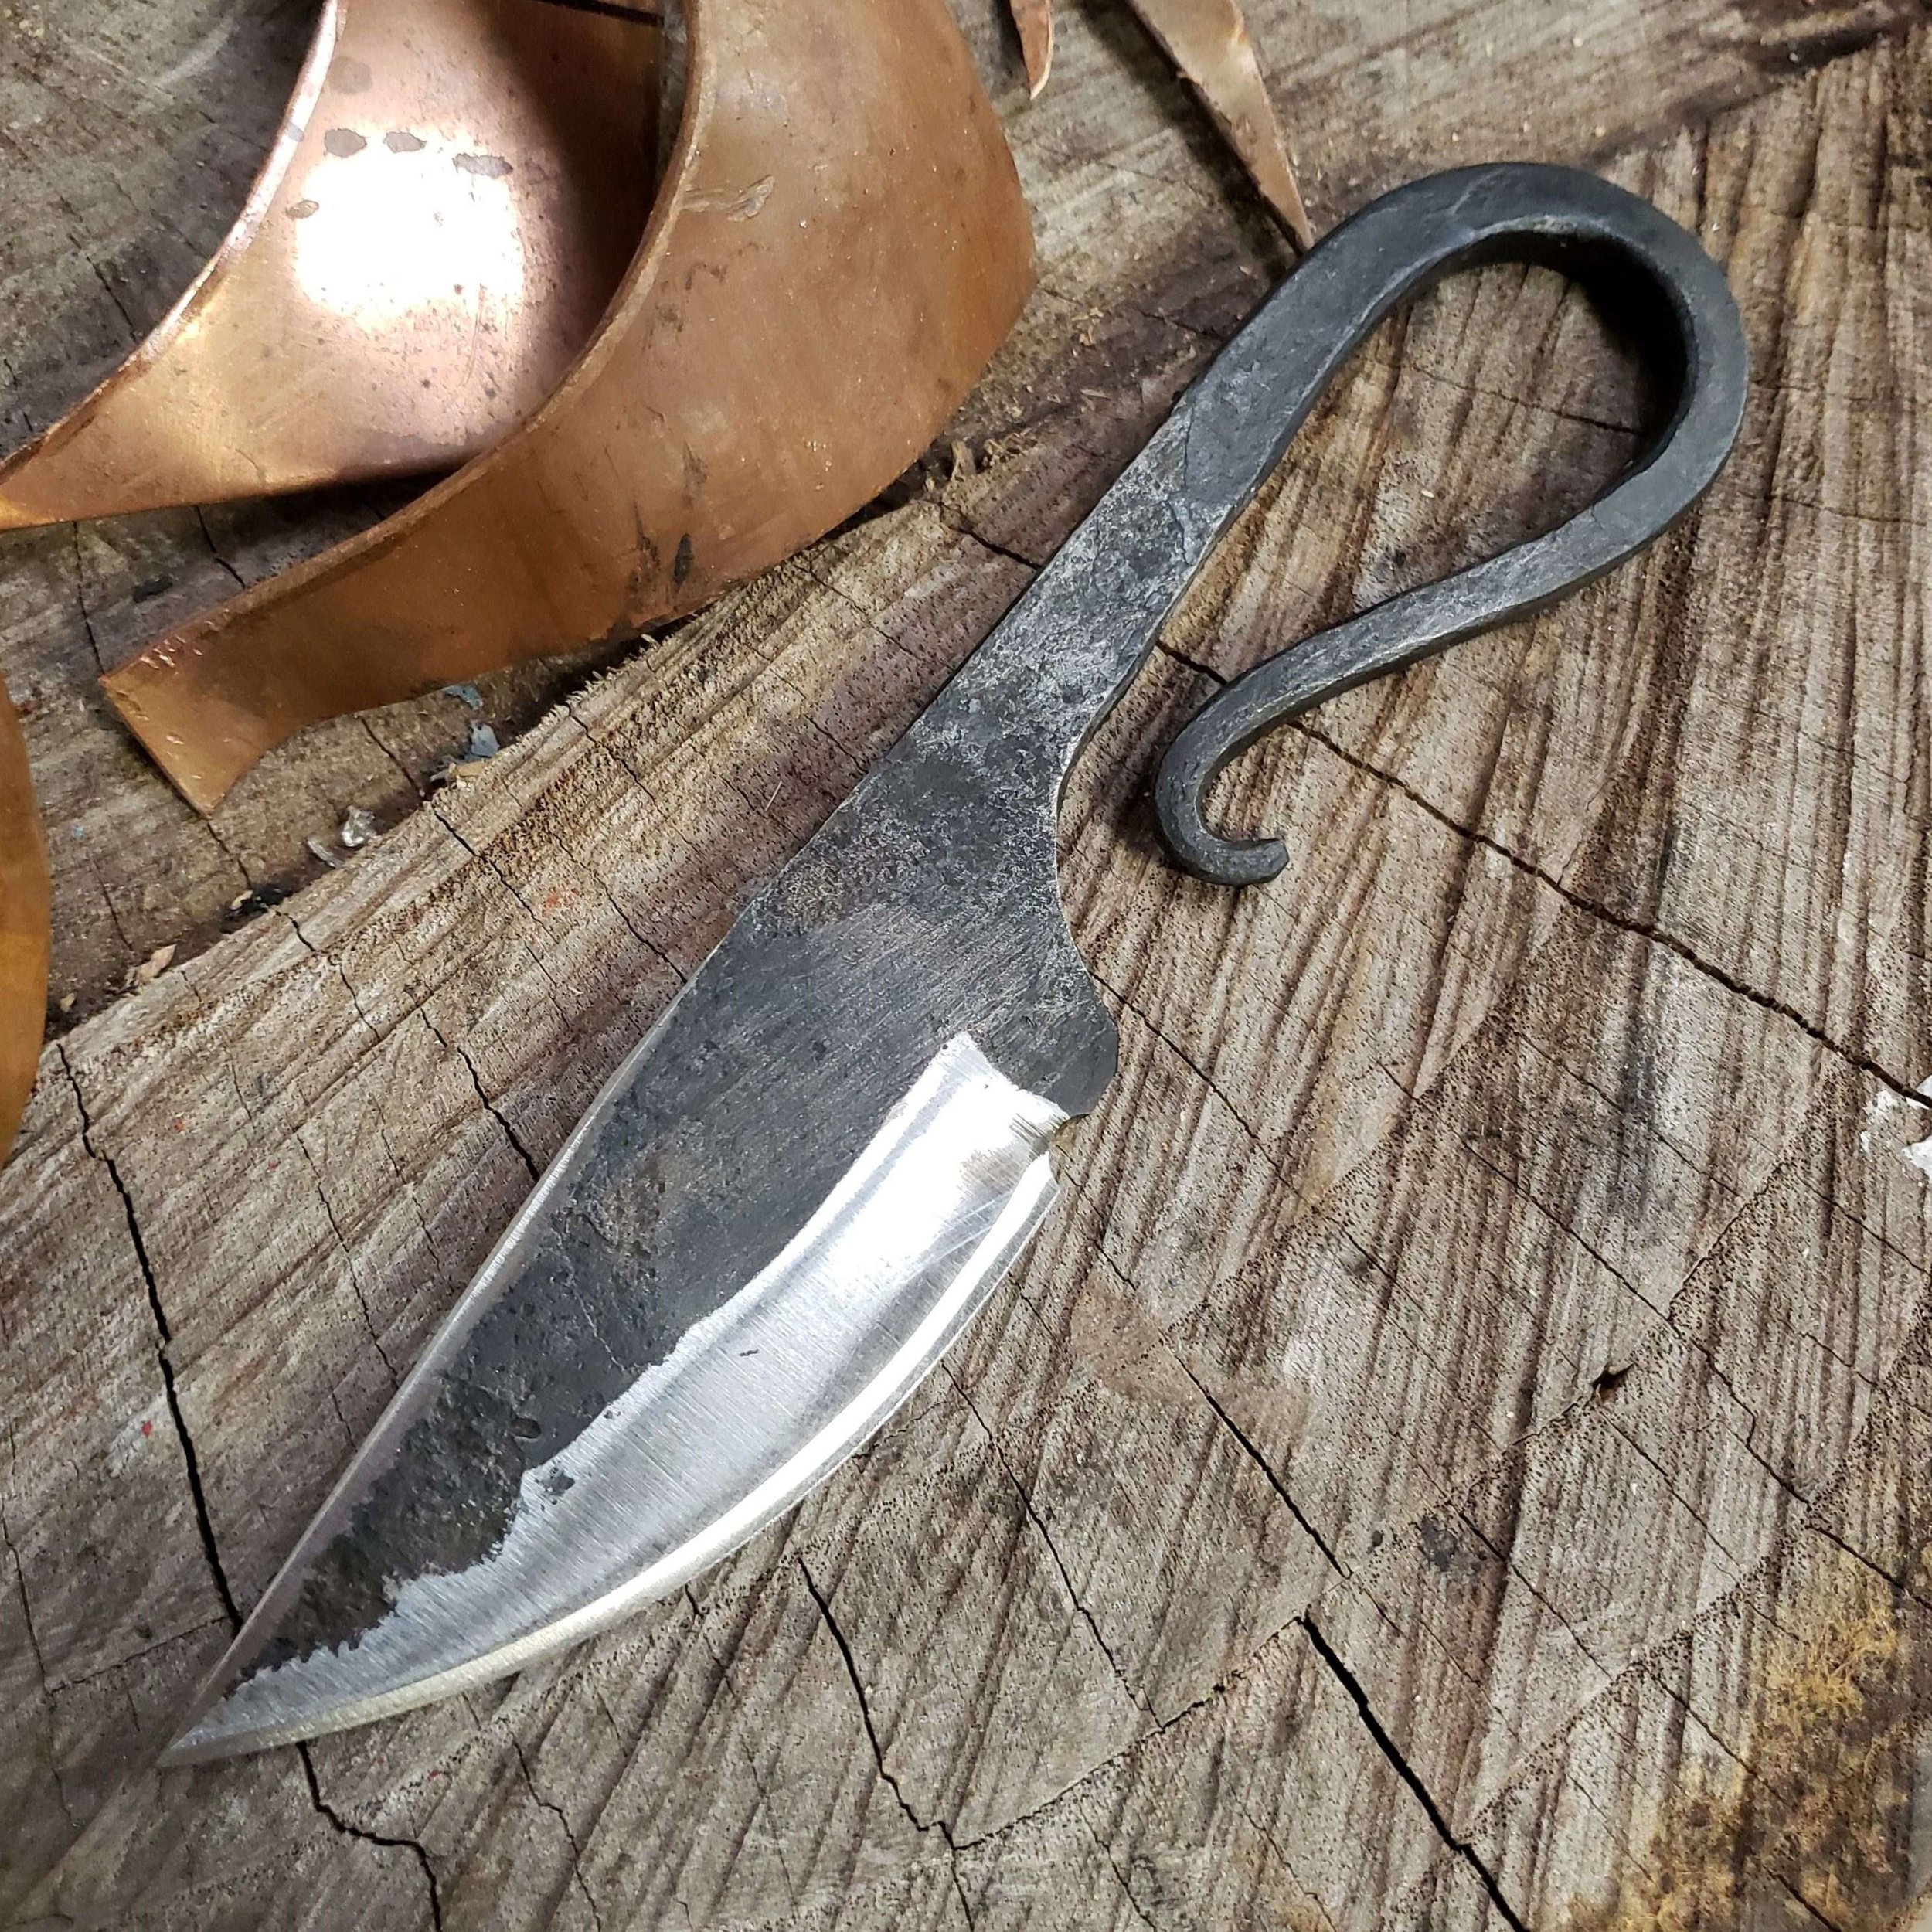 Beginner Knife Making: Blacksmith’s Knife